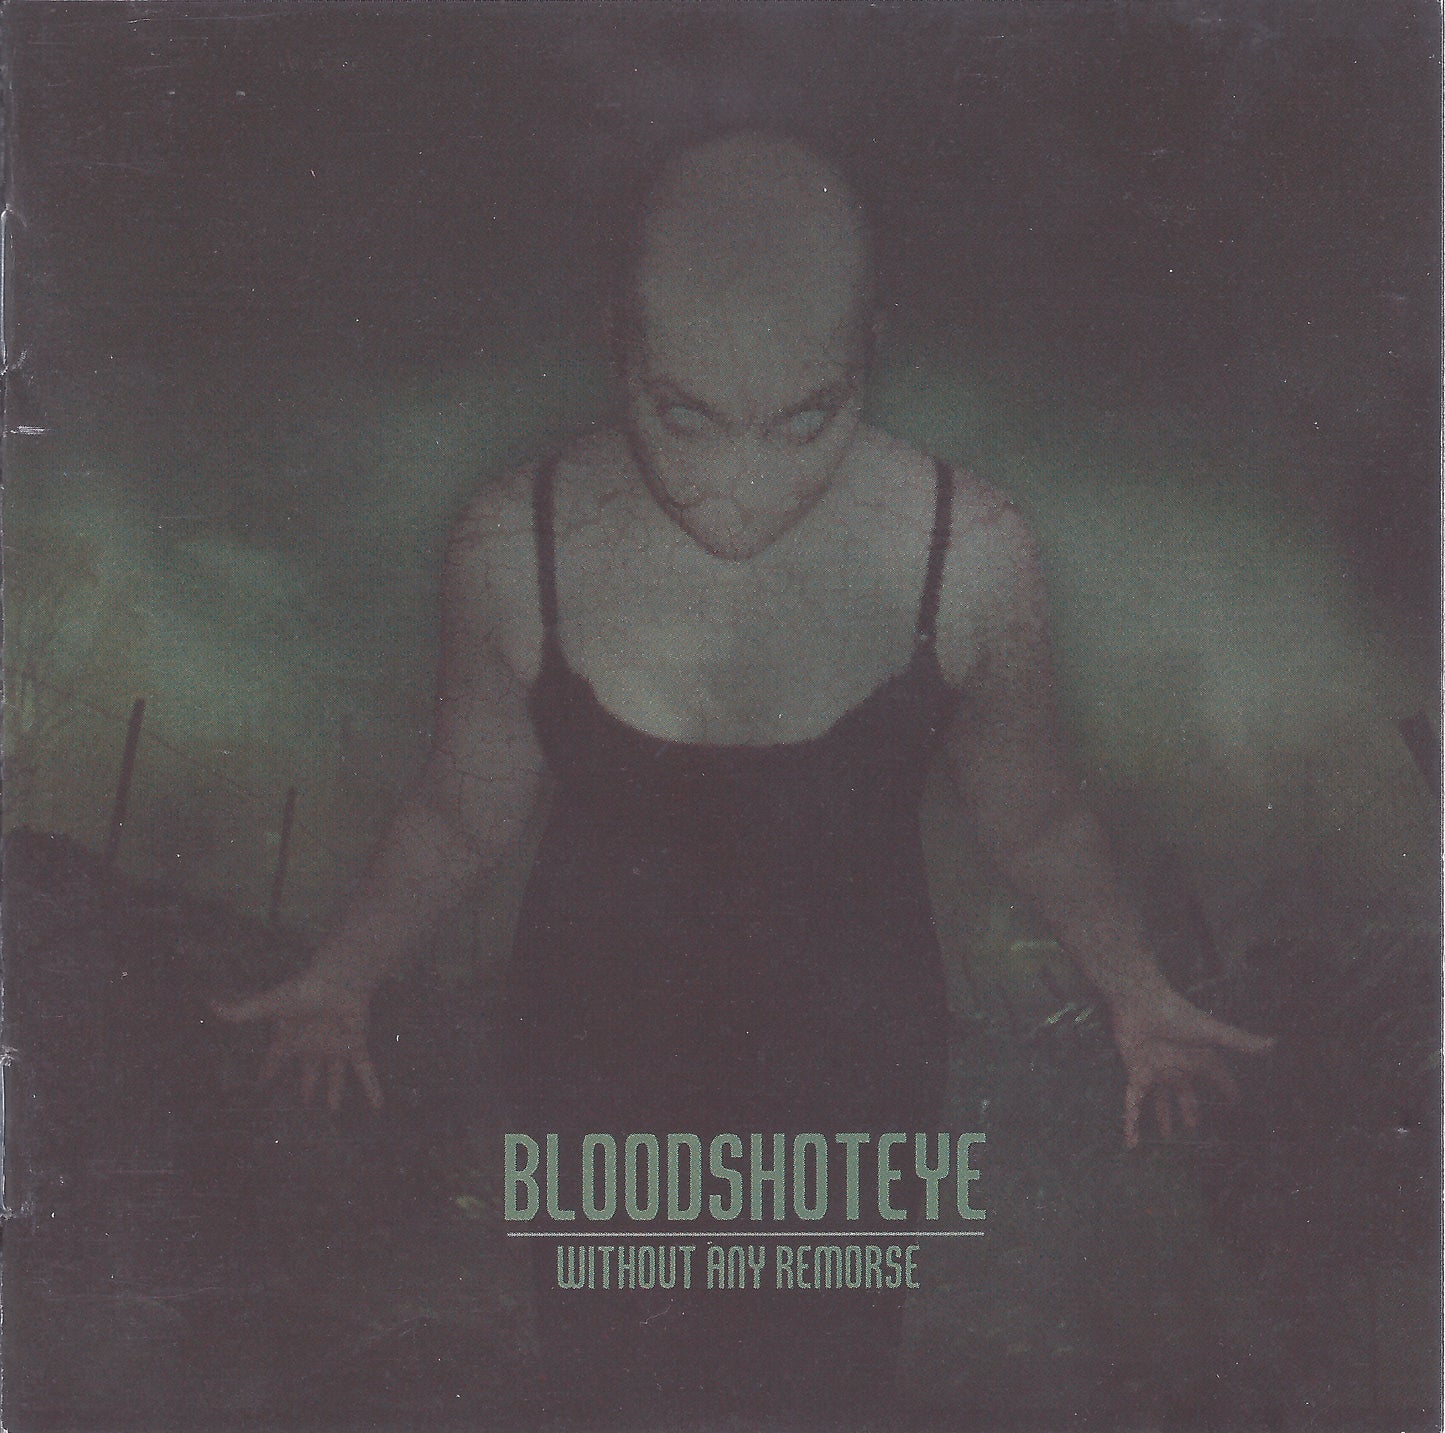 Bloodshoteye - Without Any Remorse Album